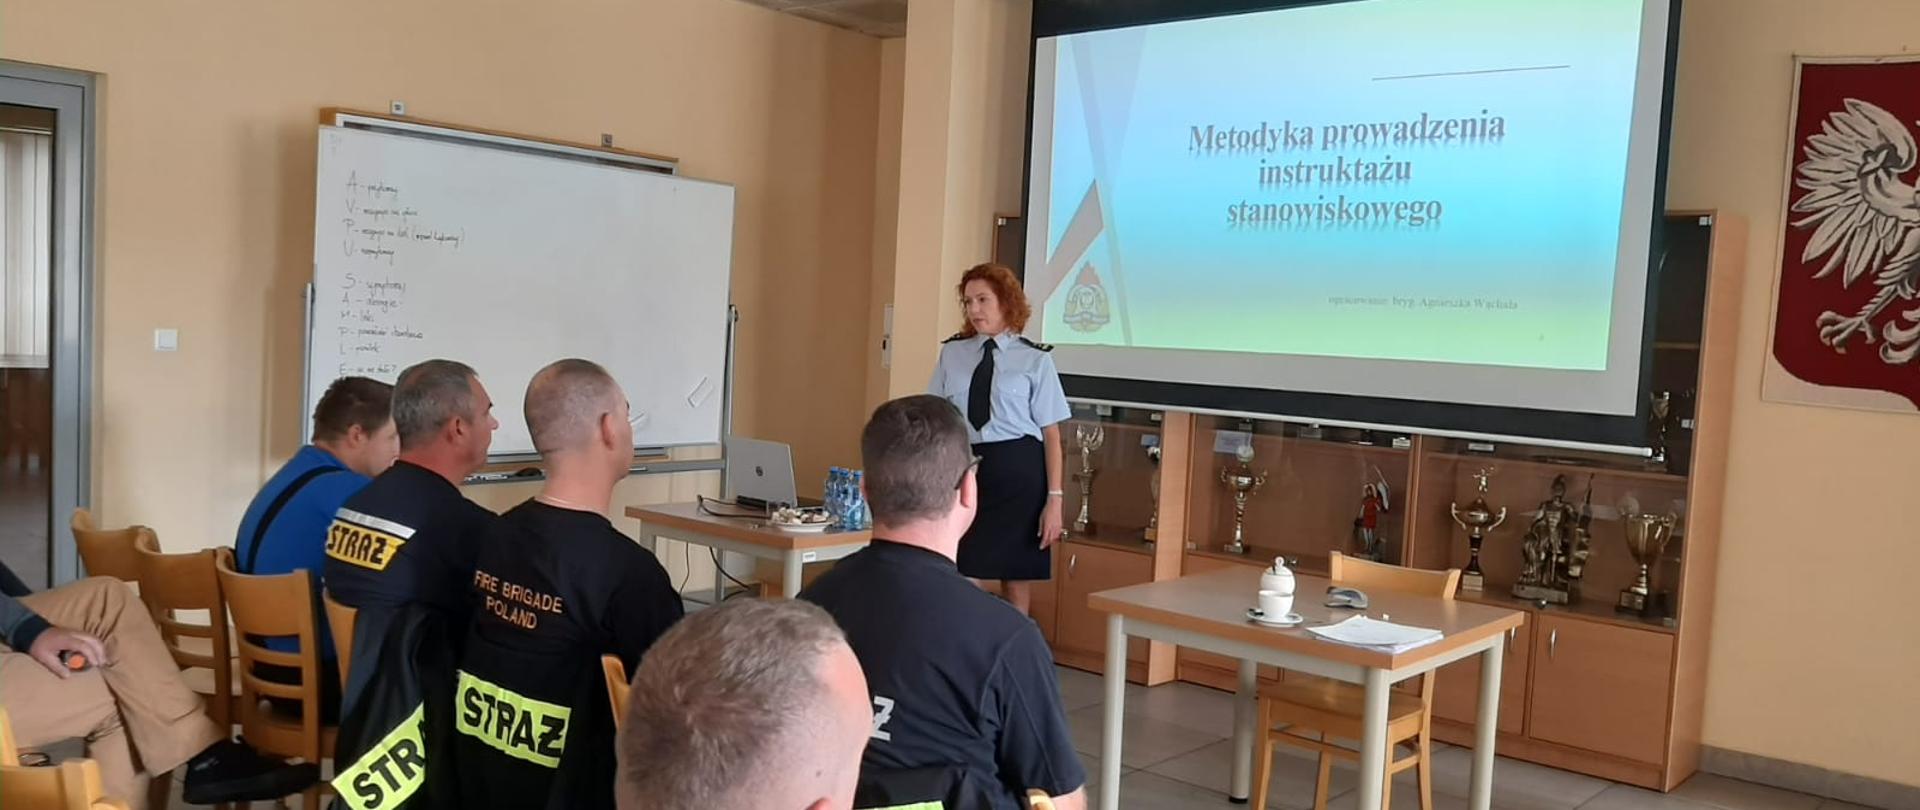 W dniu 13 września 2022 roku w Komendzie Miejskiej Państwowej Straży Pożarnej w Bielsku-Białej odbyło się szkolenie organizowane przez Komendę Wojewódzką Państwowej Straży Pożarnej
w Katowicach. Szkolenie z zakresu Bezpieczeństwa i Higieny Pracy było skierowane do naczelników Ochotniczych Straży Pożarnych z terenu Bielska-Białej i powiatu bielskiego i zostało przeprowadzone na podstawie programu szkolenia zatwierdzonego przez Komendanta Głównego PSP.
